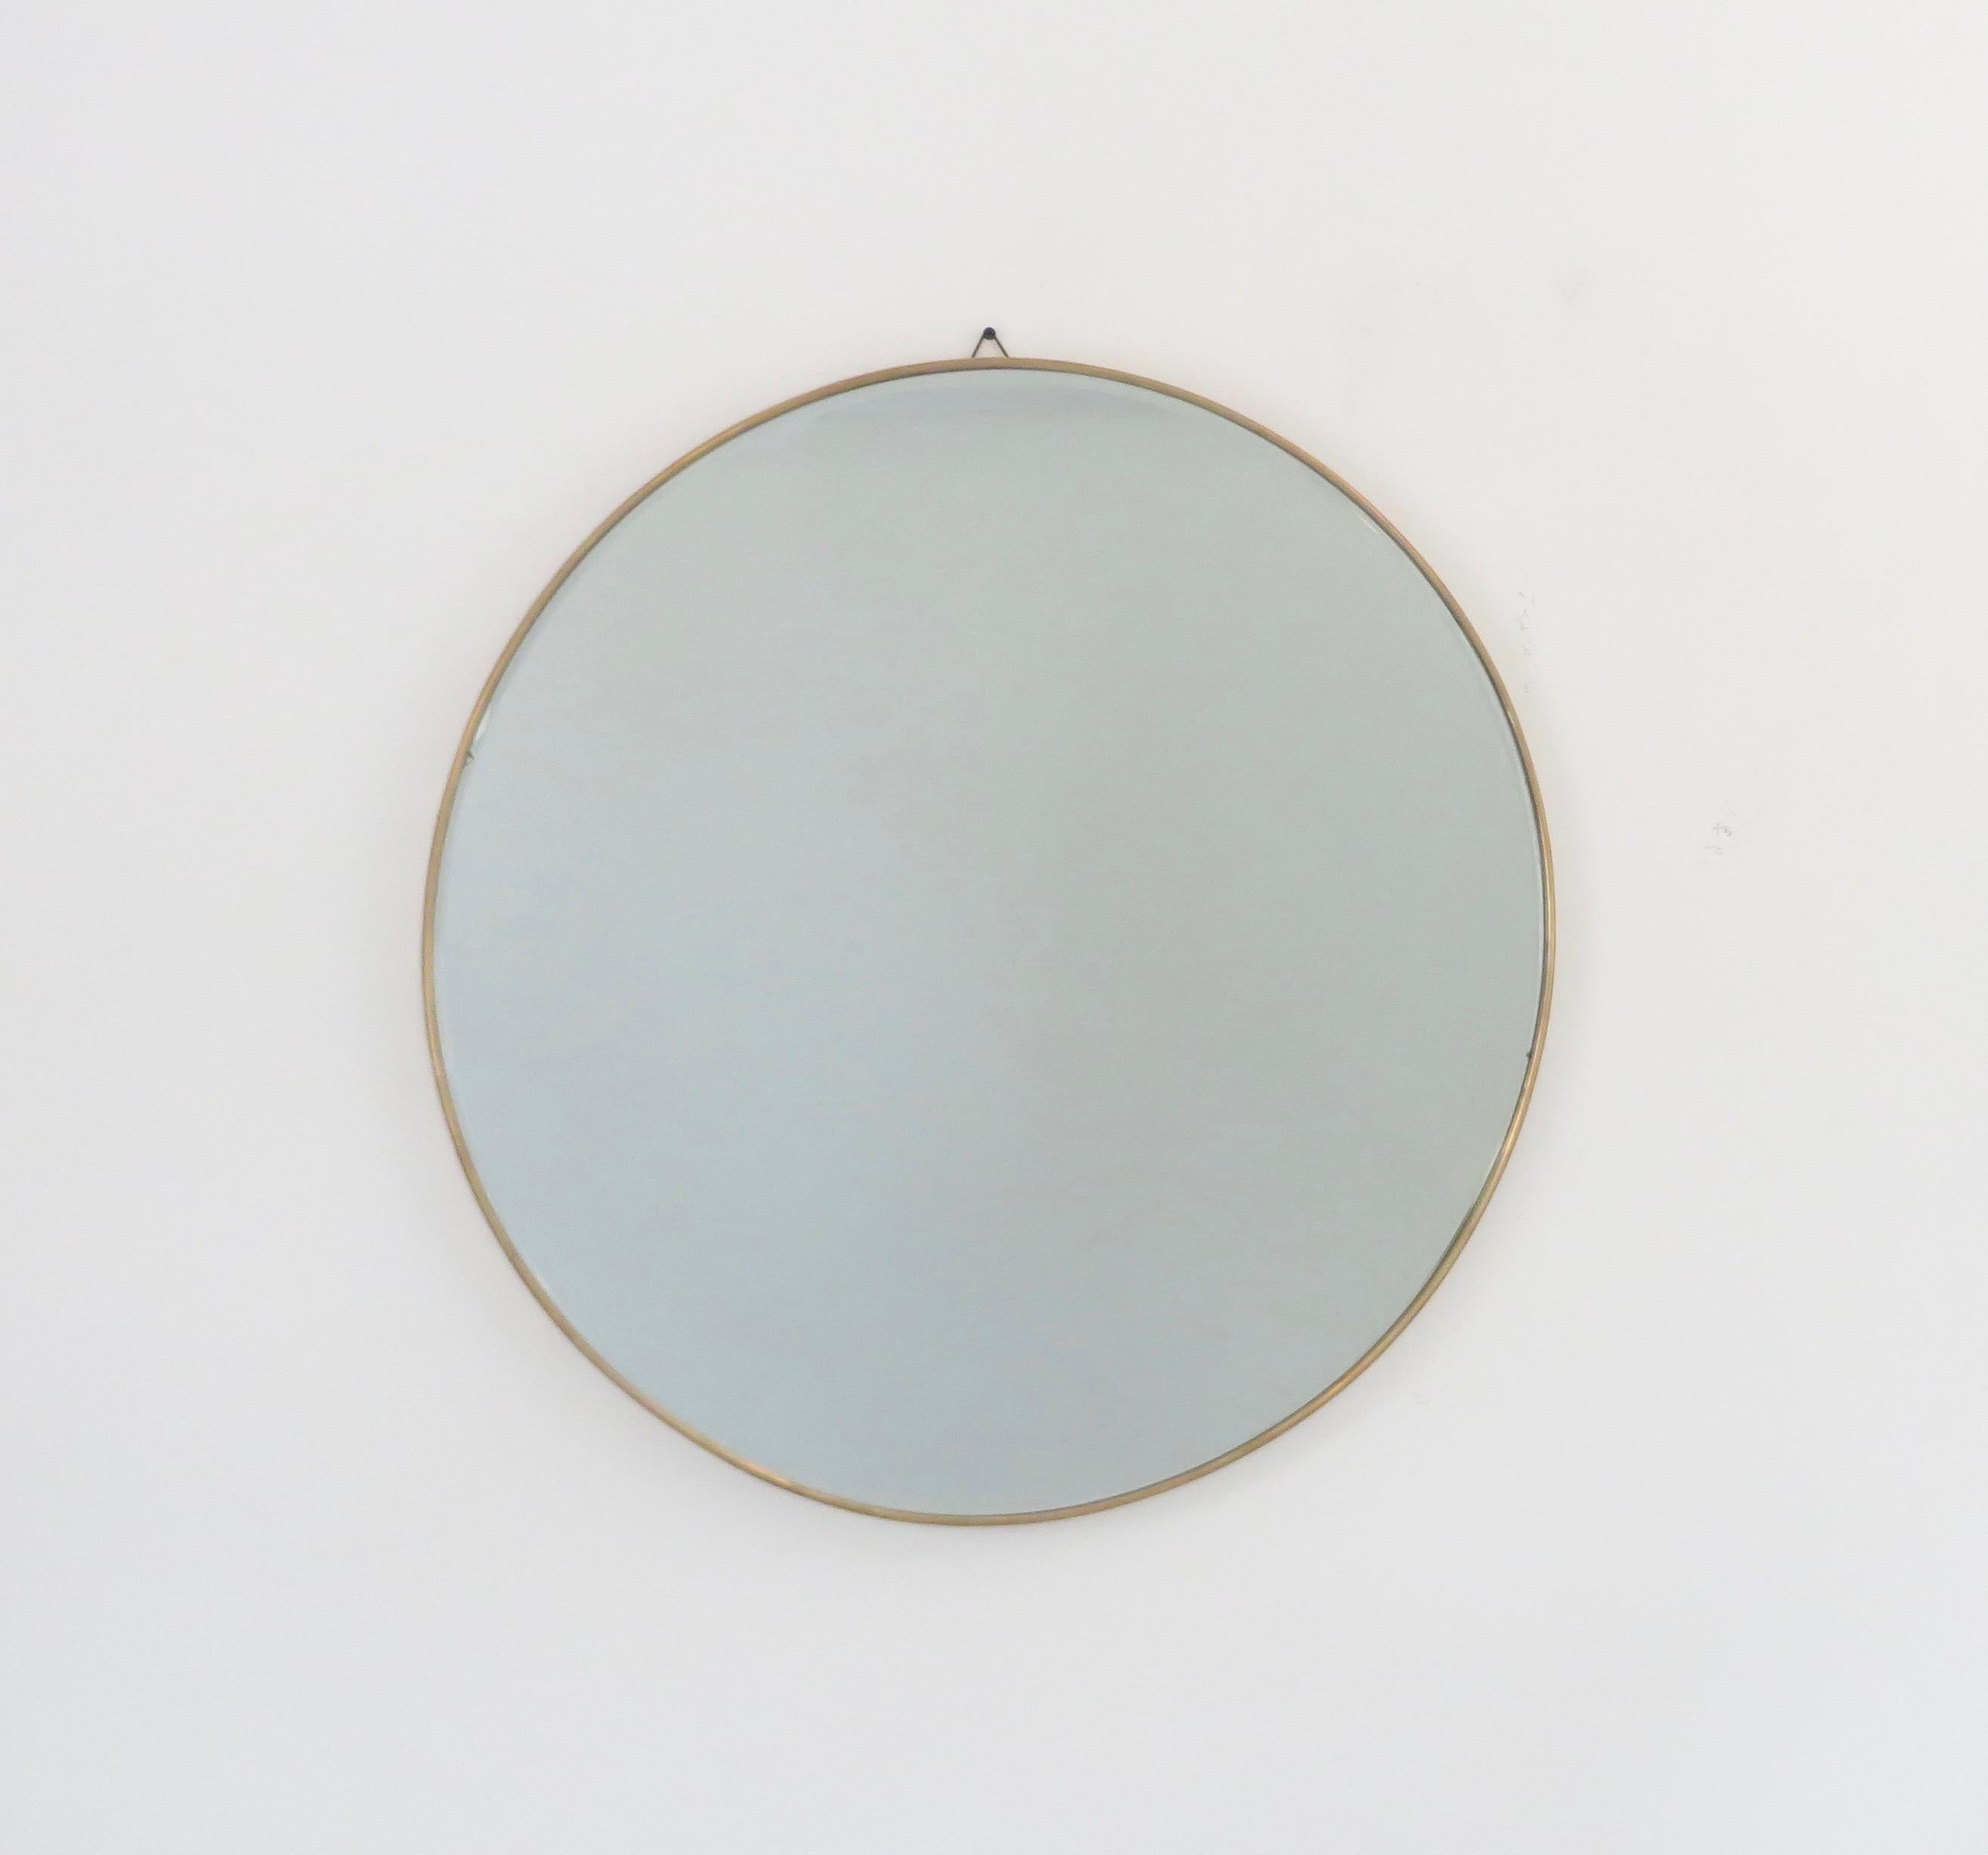 Mid-Century Modern Italian Brass Framed Vintage Round Mirror with Bevel